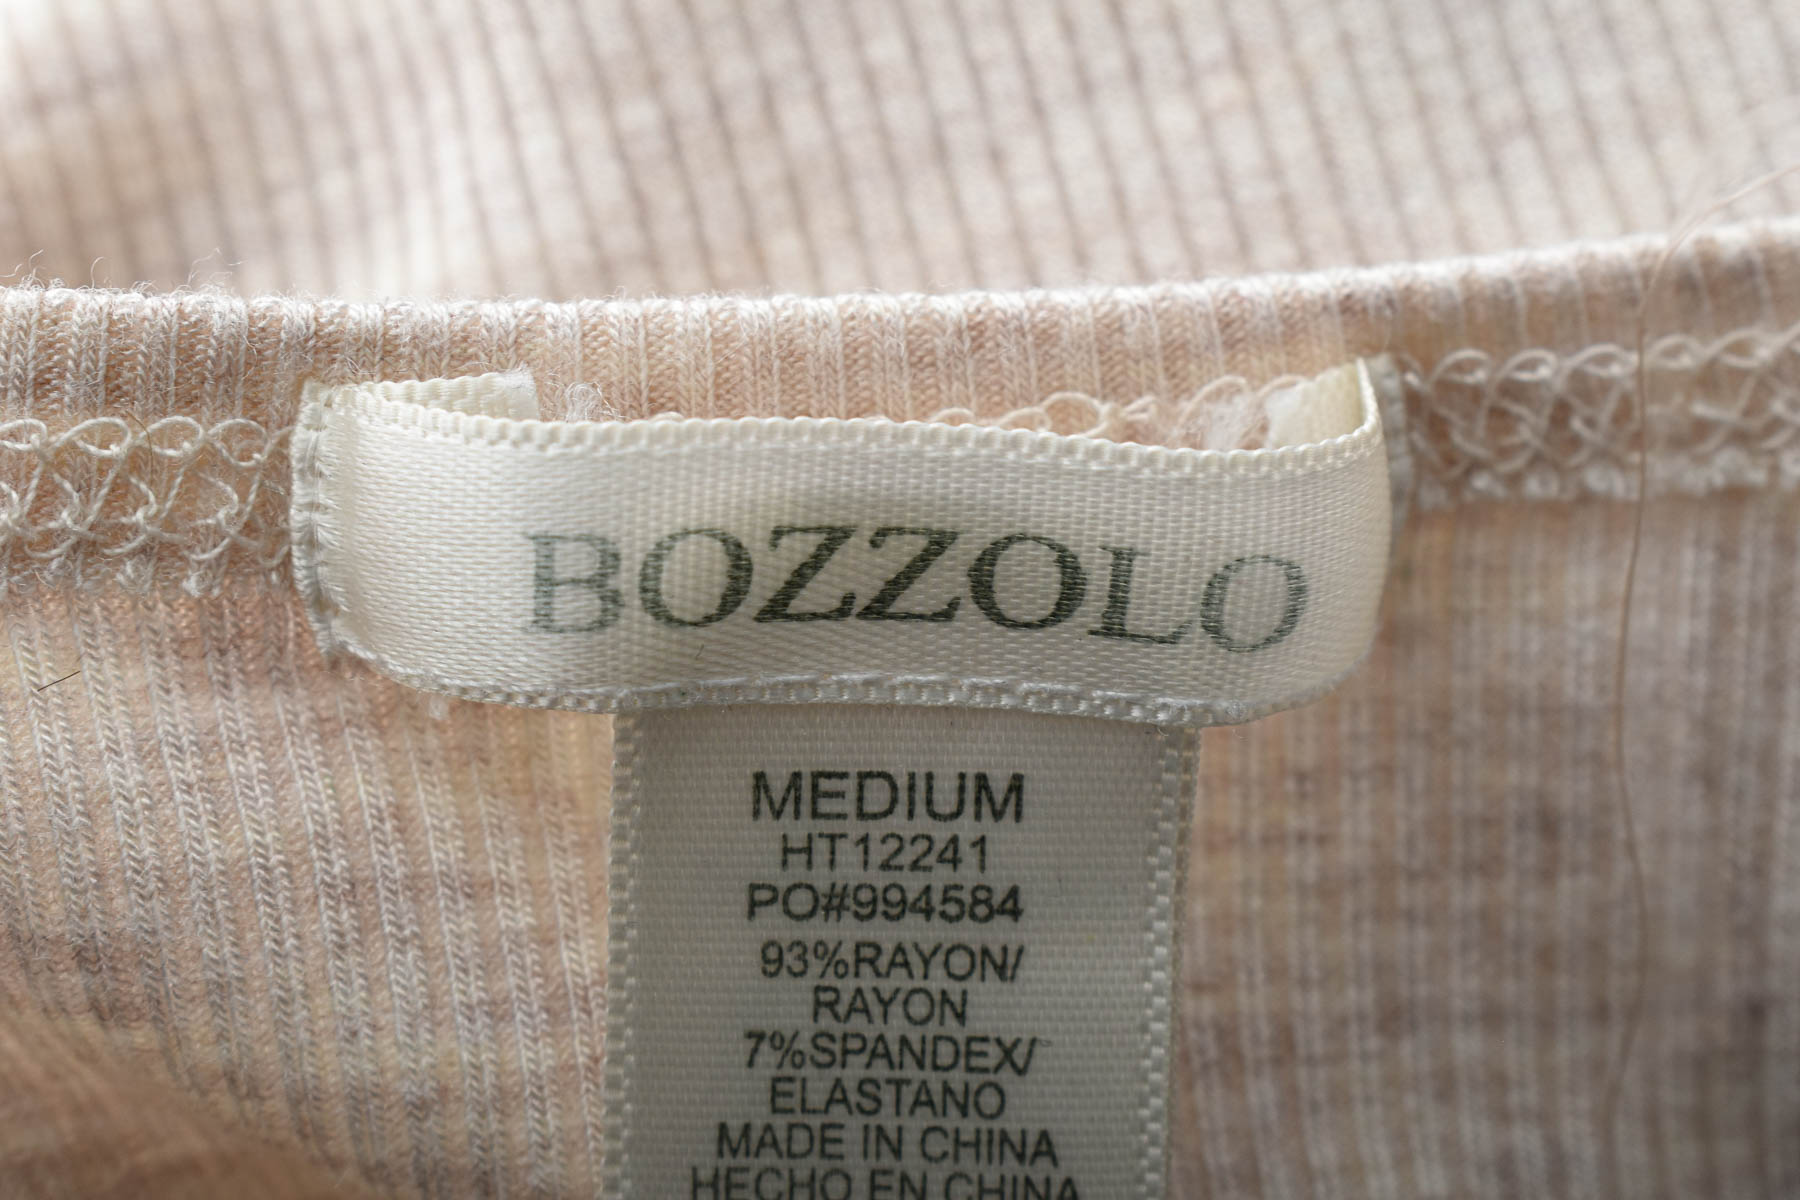 Γυναικεία μπλούζα - Bozzolo - 2